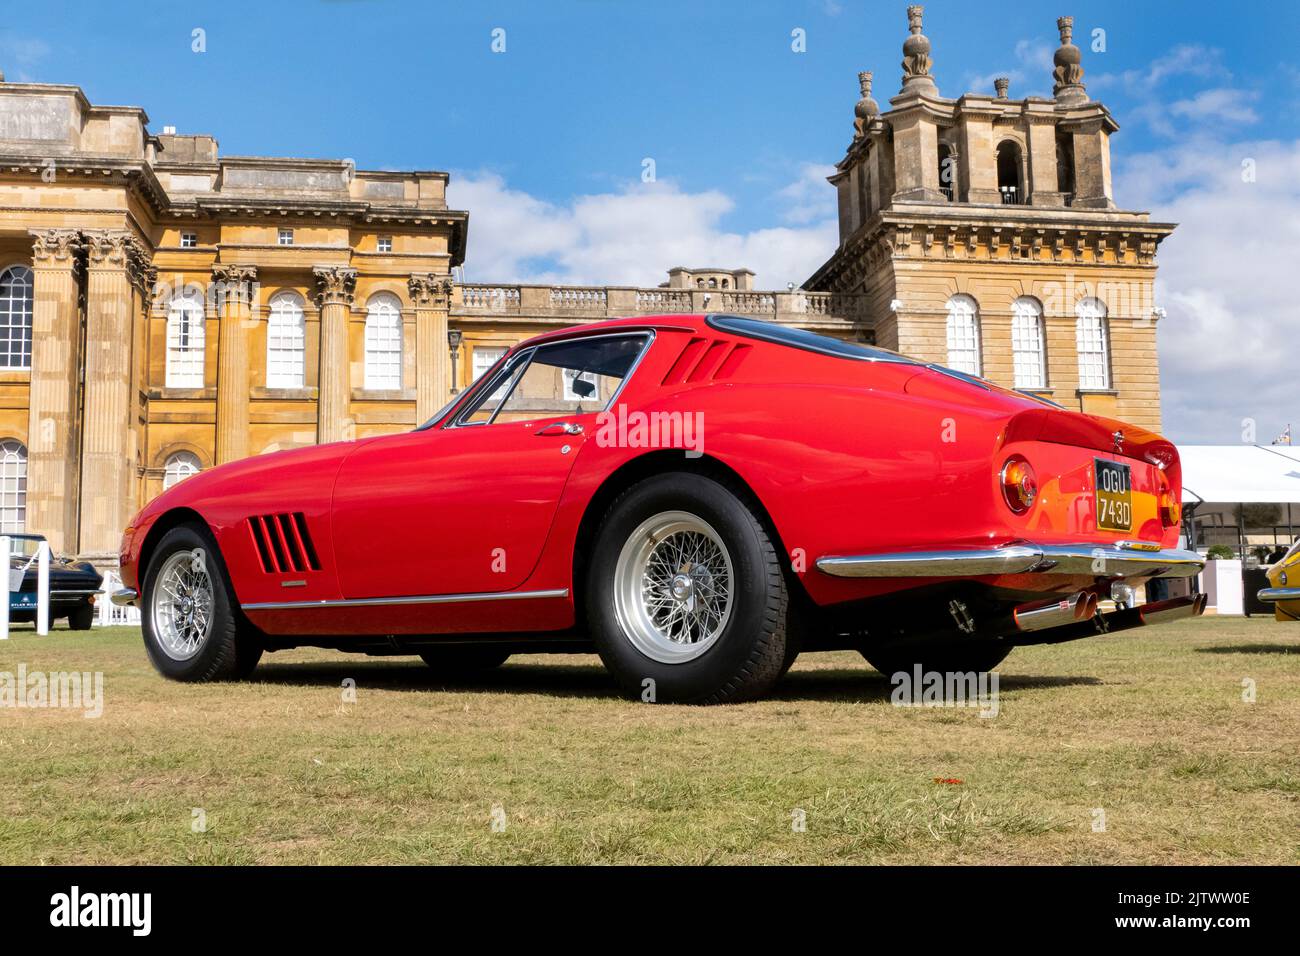 1966 Ferrari 275 GTB/C au salon Prive Concours au Blenheim Palace Oxfordshire Royaume-Uni Banque D'Images